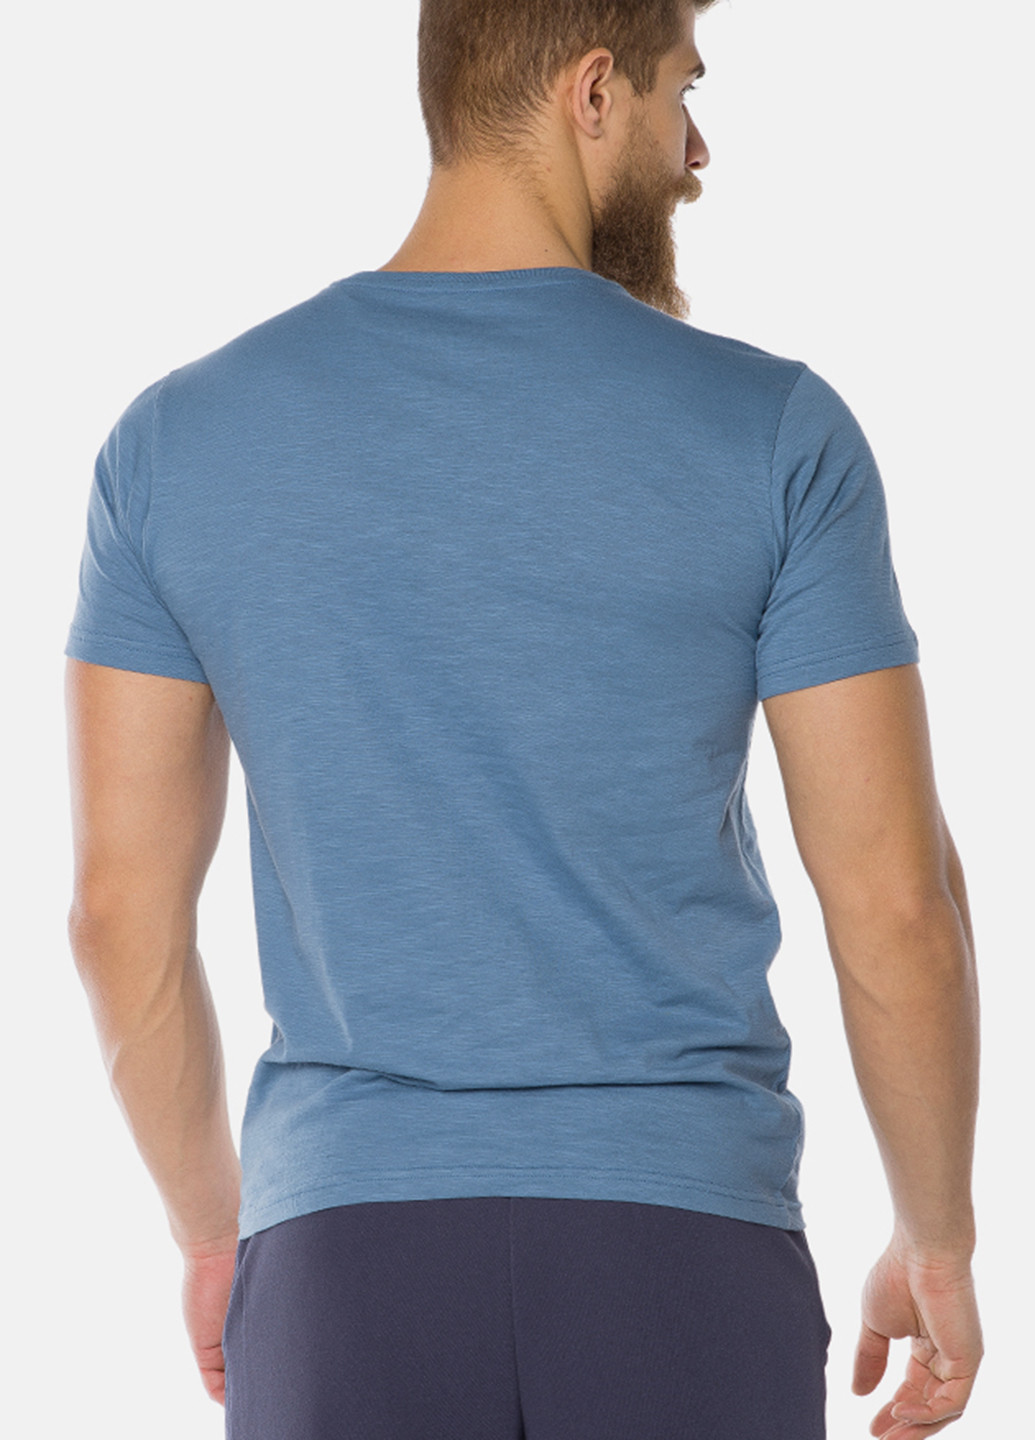 Светло-синяя футболка MR 520